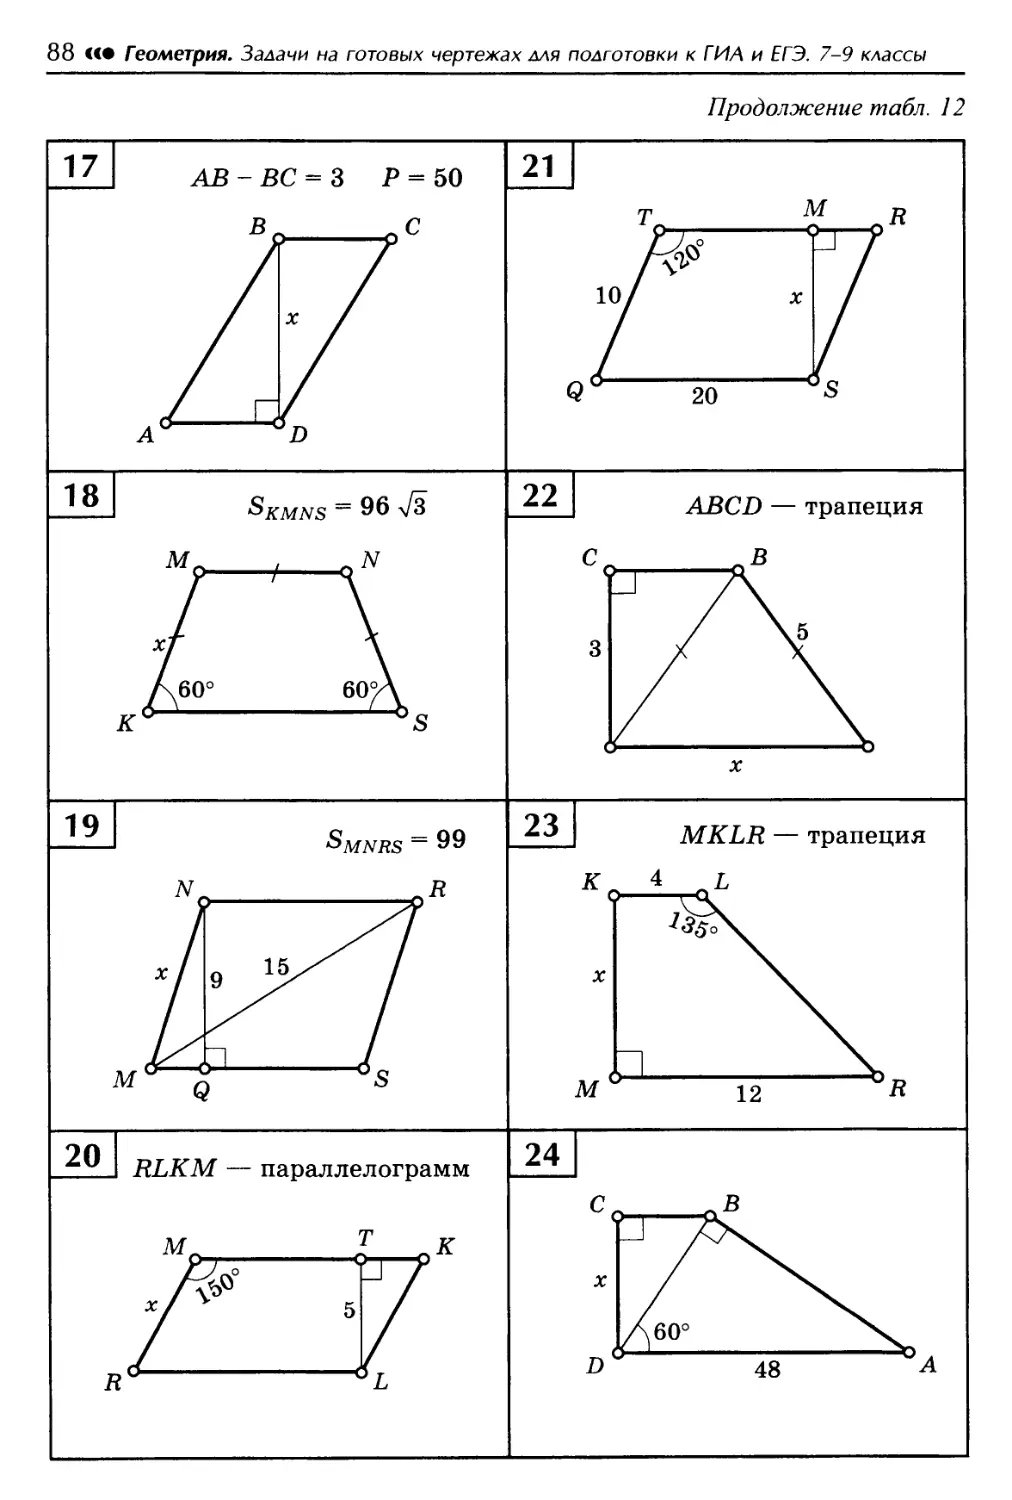 Задачи на готовых чертежах 7 9. Геометрия на готовых чертежах 7-9 классы теорема Пифагора. Балаян 10-11 класс геометрия задачи на готовых чертежах ответы. Геометрия Балаян 7-9 класс задачи на готовых чертежах ОГЭ. Теорема Пифагора задачи на готовых чертежах.